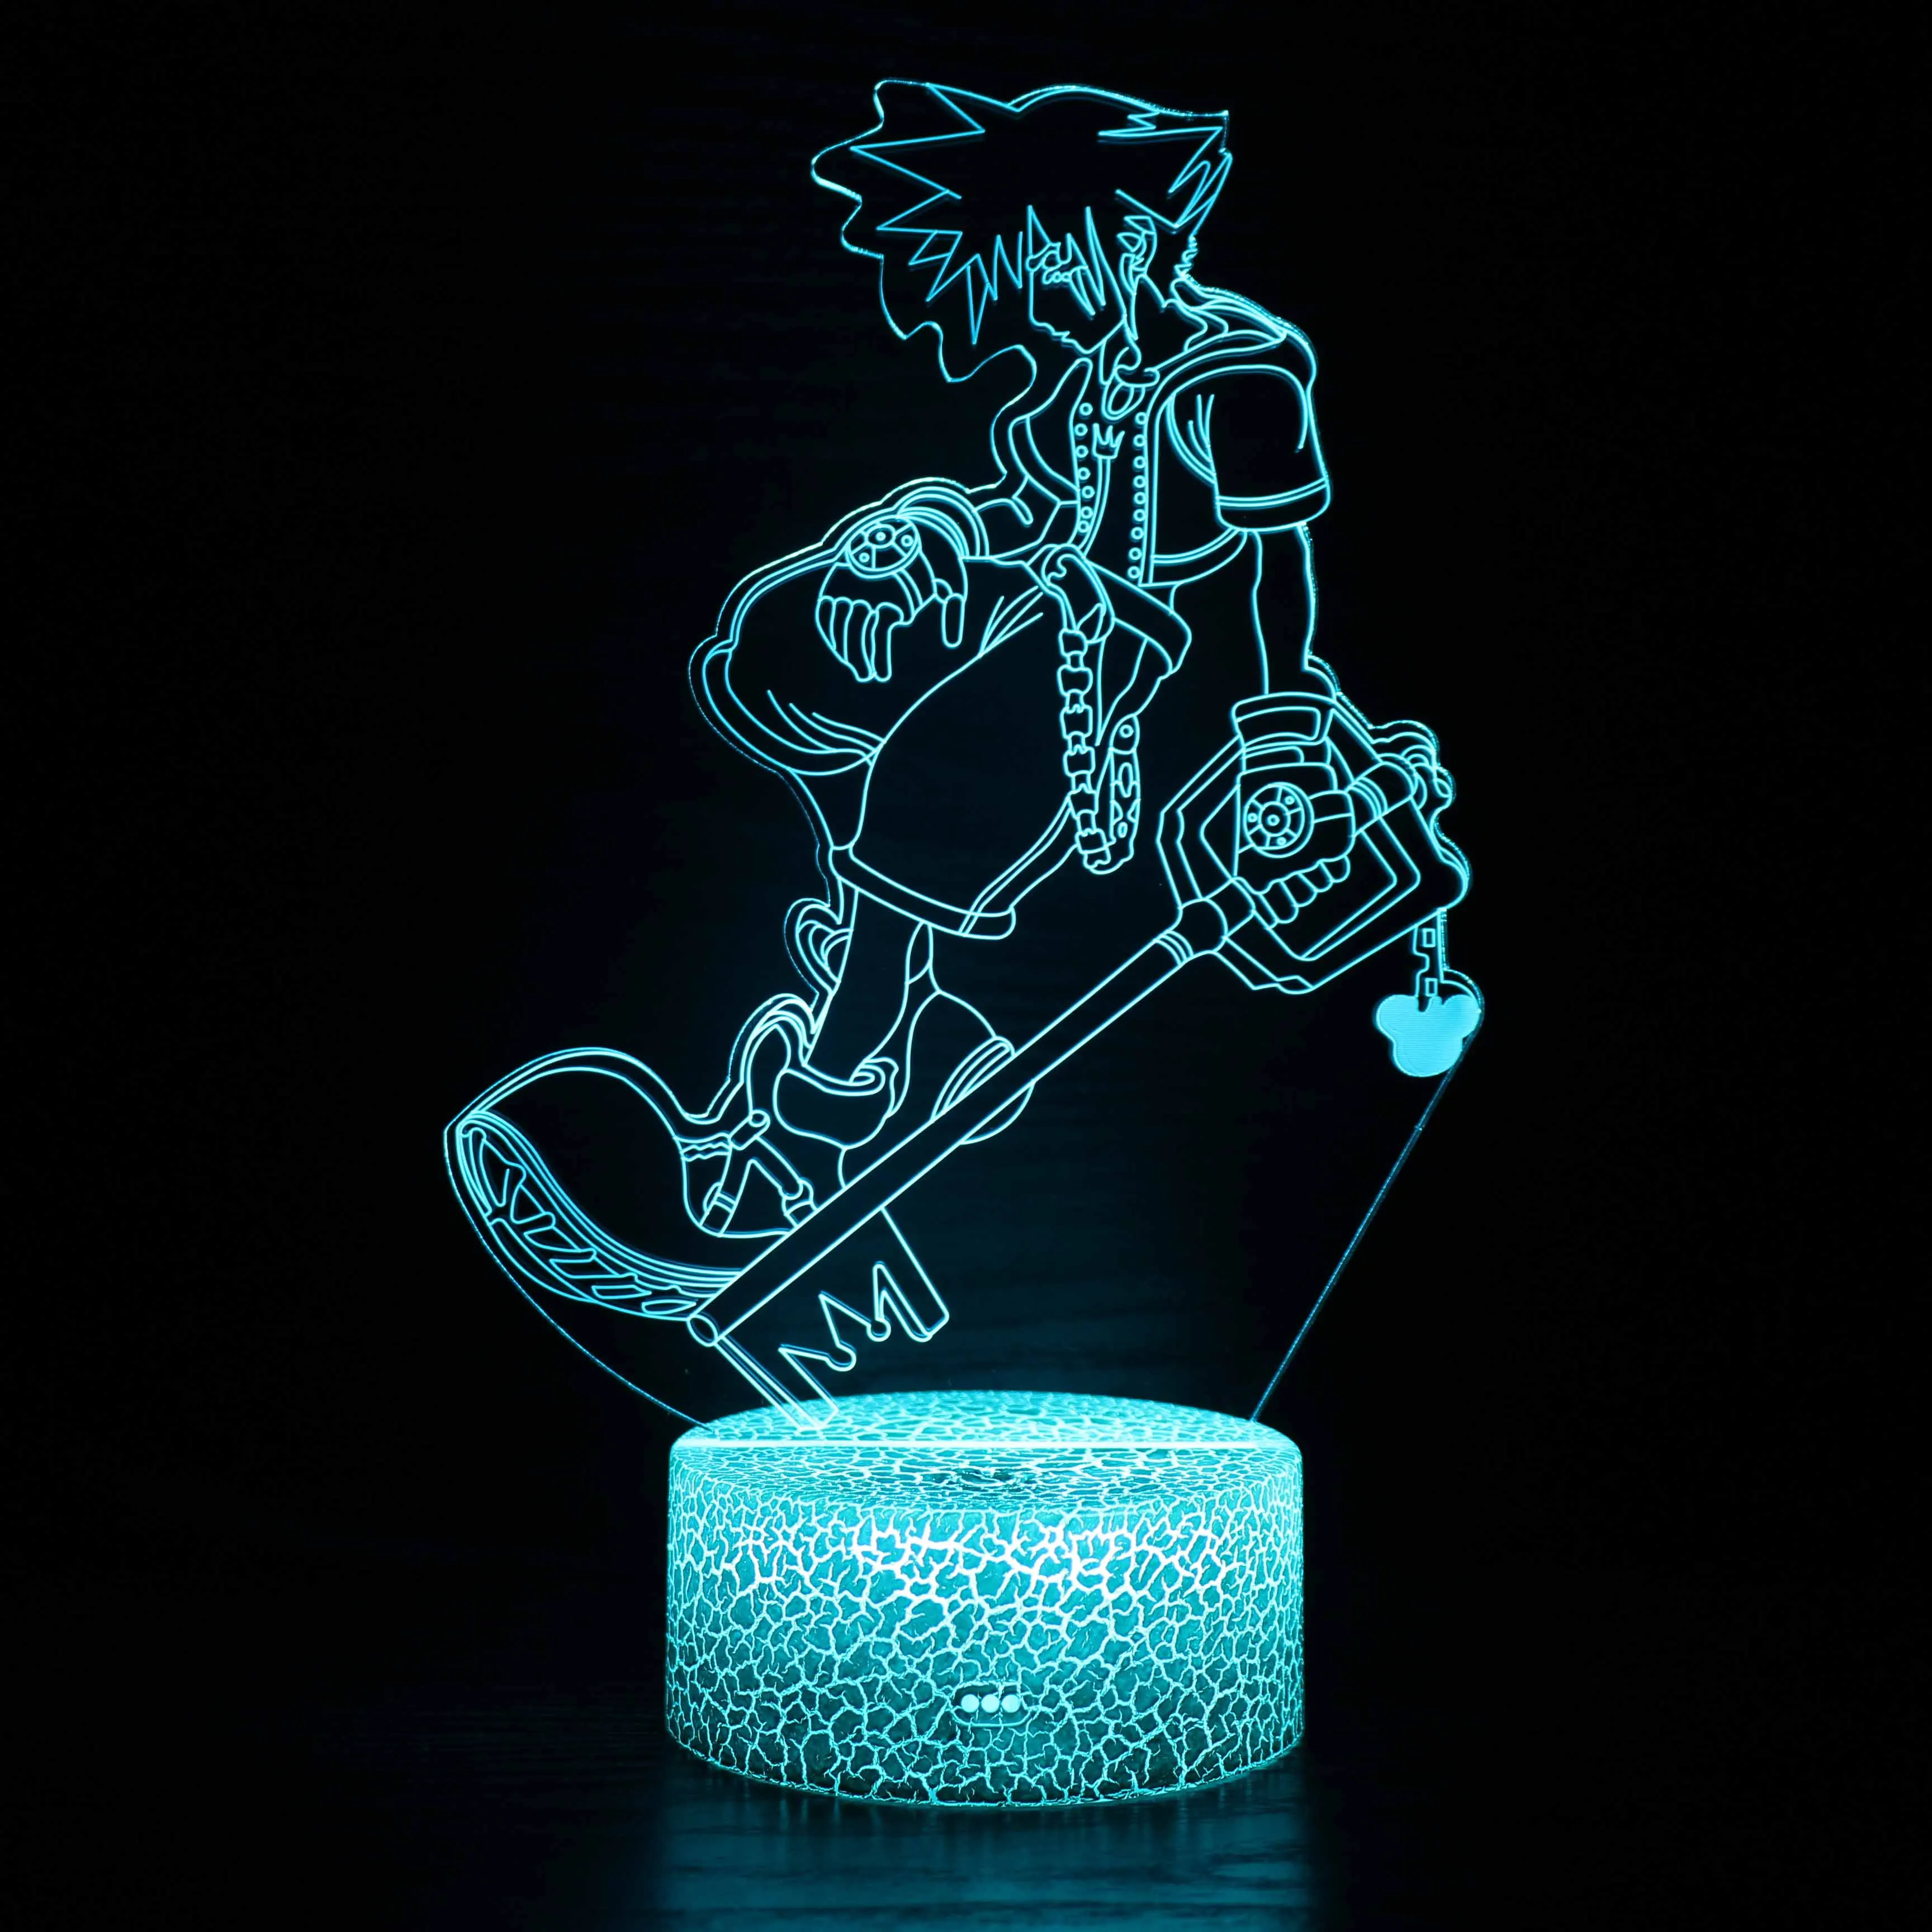 

Game Kingdom Hearts Sora Keyblade Figure Child Night Light Led Color Changing Kids Bedroom Decor Nightlight Neon Lamp Bedside